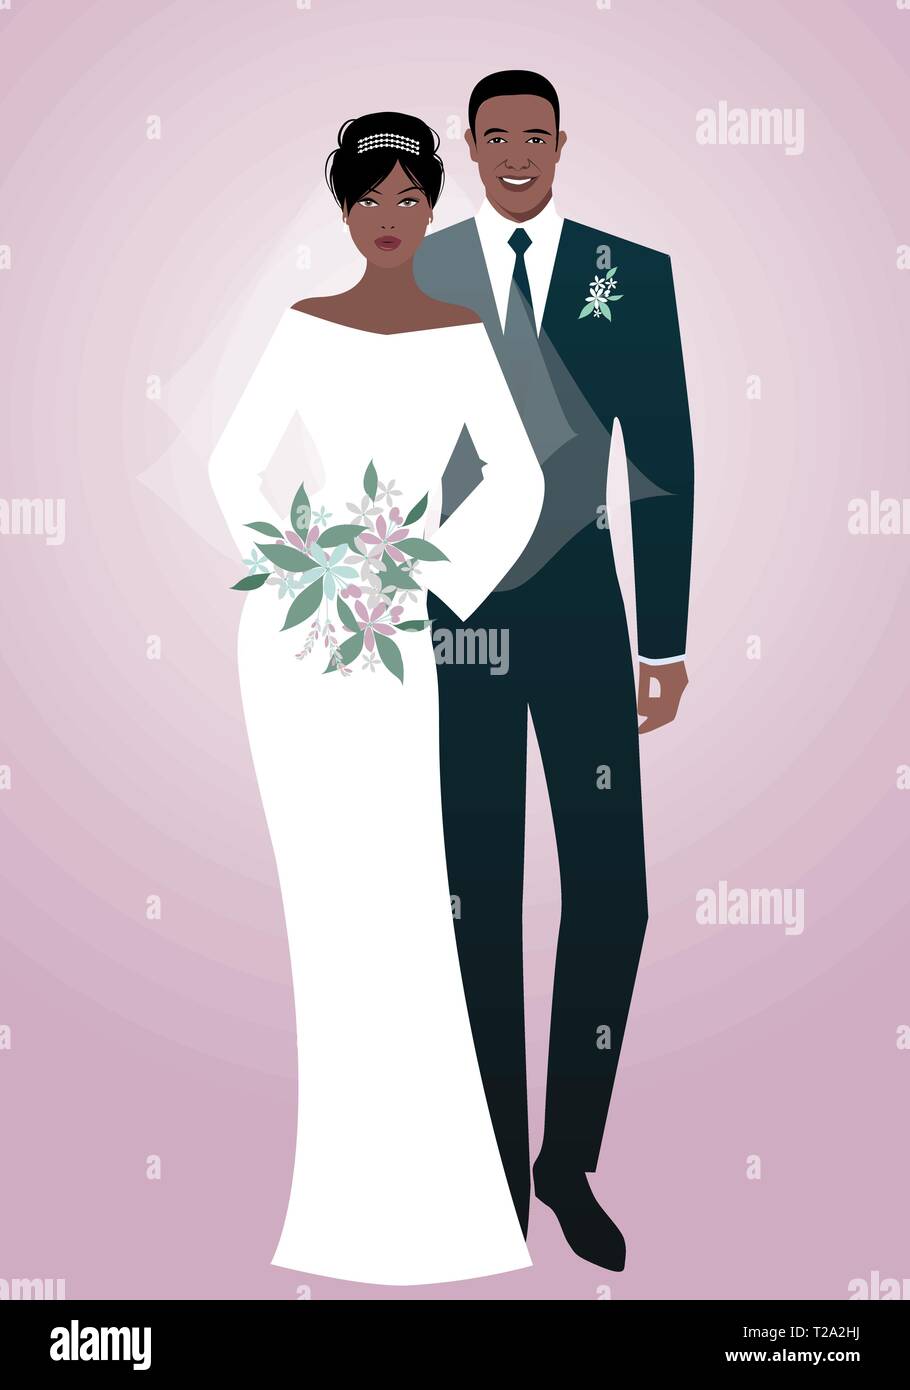 Jungen afro Paar Brautpaar Hochzeit Kleidung tragen. Elegante Bräutigam mit  Anzug und Krawatte und schöne Braut mit Schleier mit einem Blumenstrauß  Stock-Vektorgrafik - Alamy